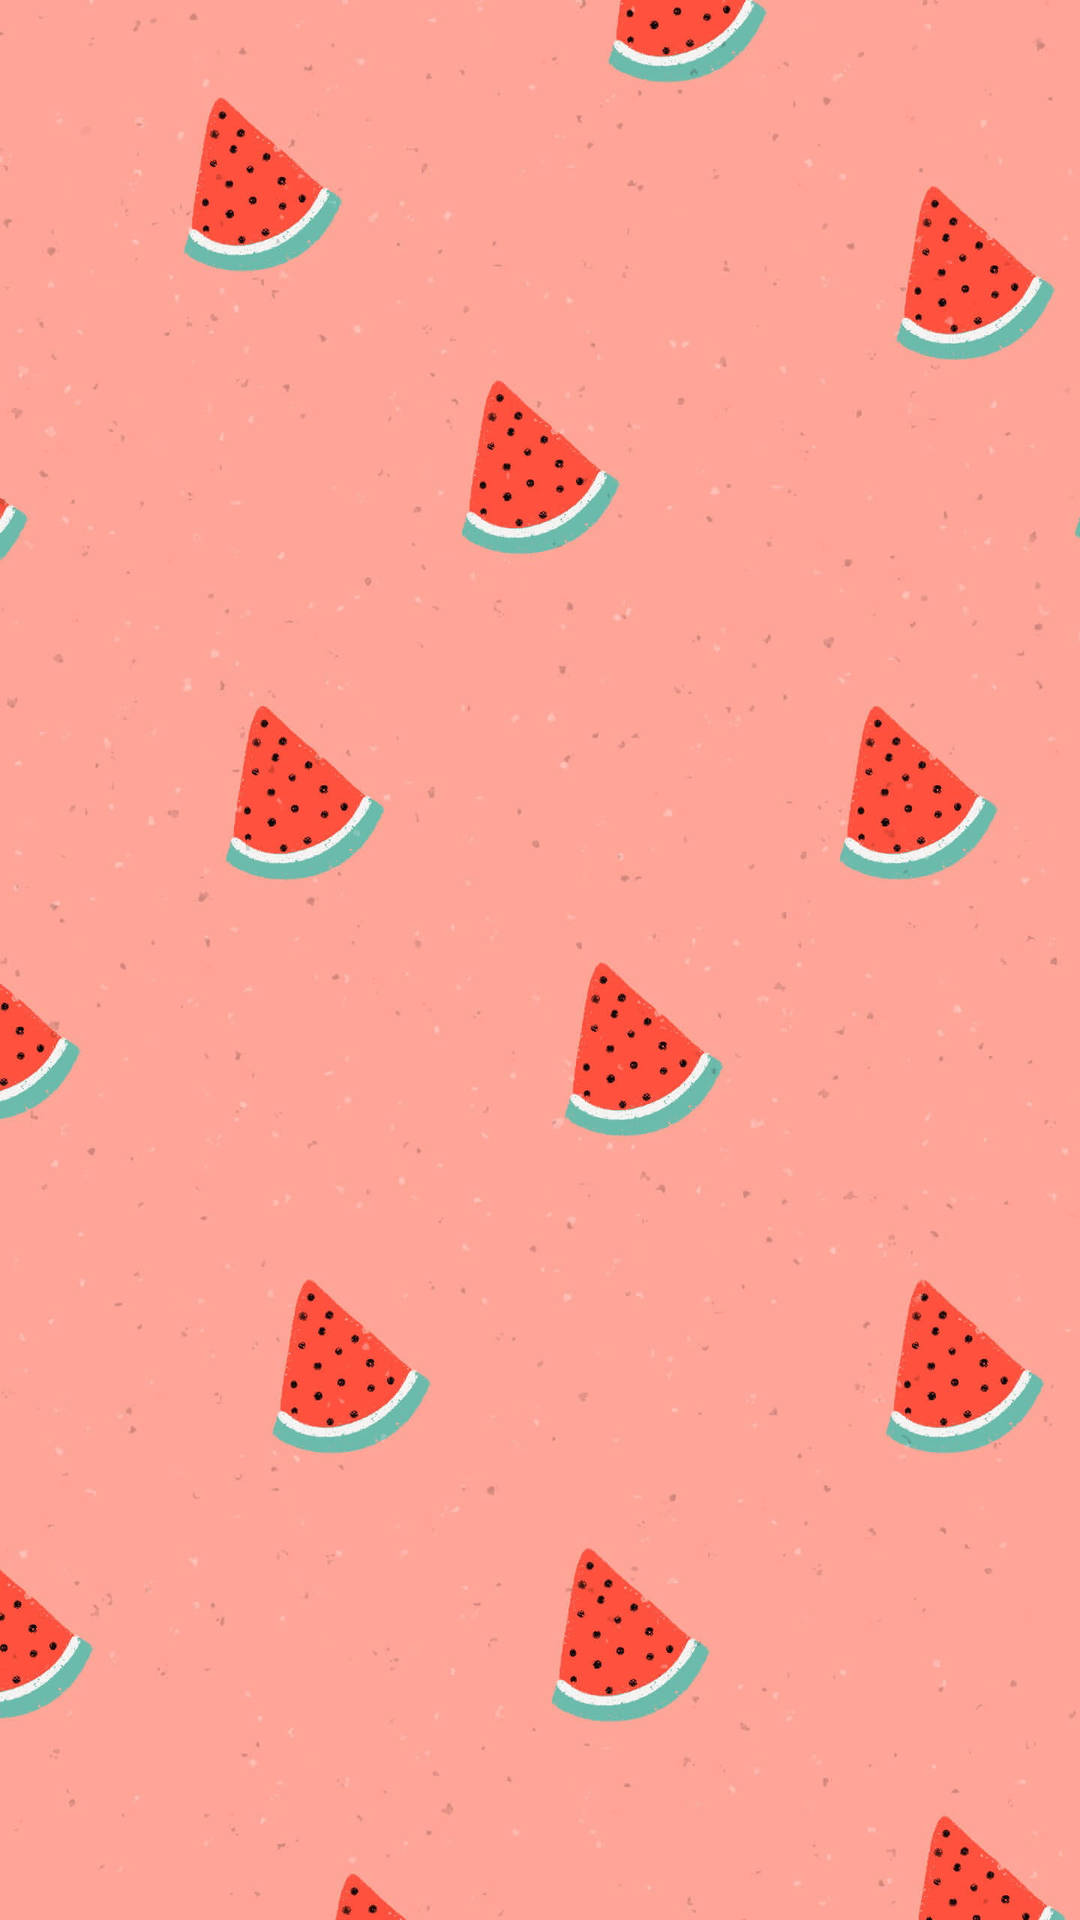 Cute watermelon: Hãy cùng thưởng thức những hình ảnh về dưa hấu đáng yêu giúp bạn thoải mái sau một ngày làm việc căng thẳng. Những hình ảnh với màu sắc tươi sáng cùng chú dưa hấu kute chắc chắn sẽ làm bạn thích thú. Xem ngay tại đây để thấy được sự đáng yêu của chú dưa hấu!